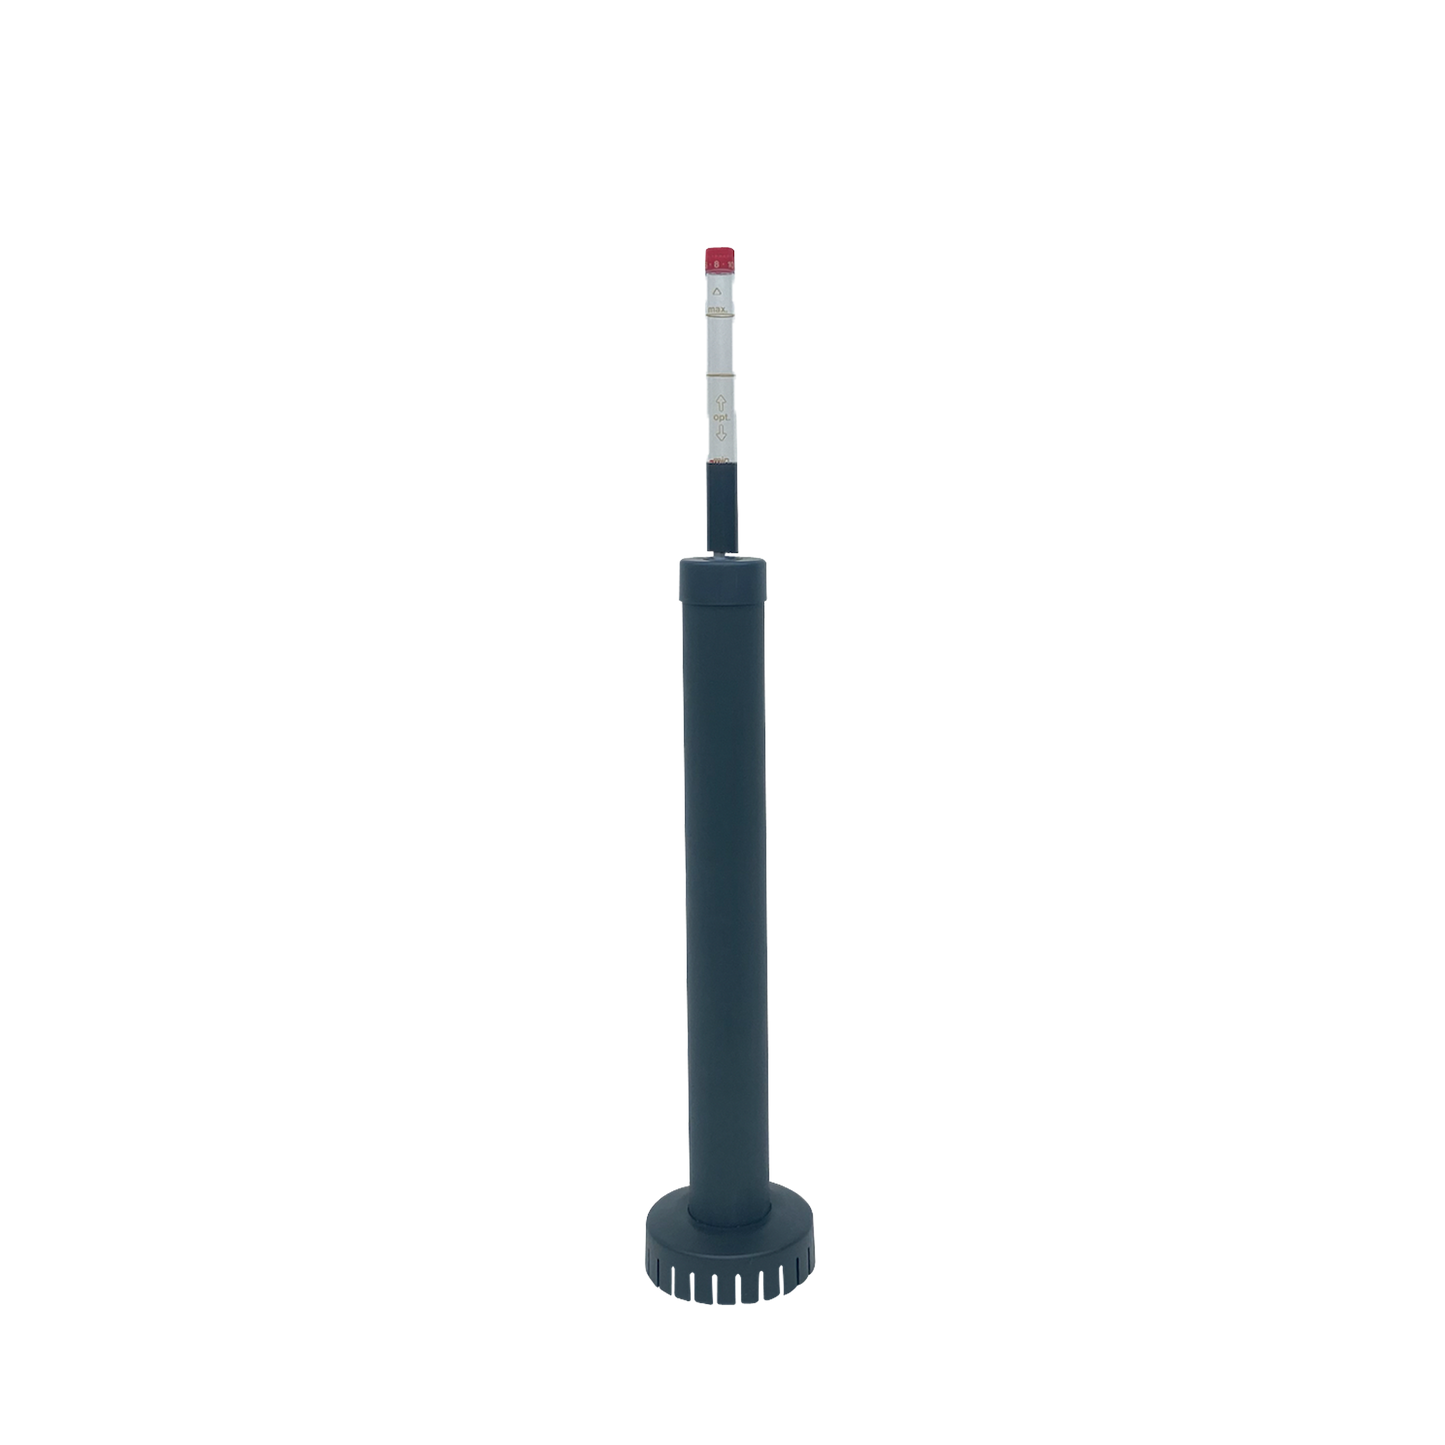 Hydro watermeter